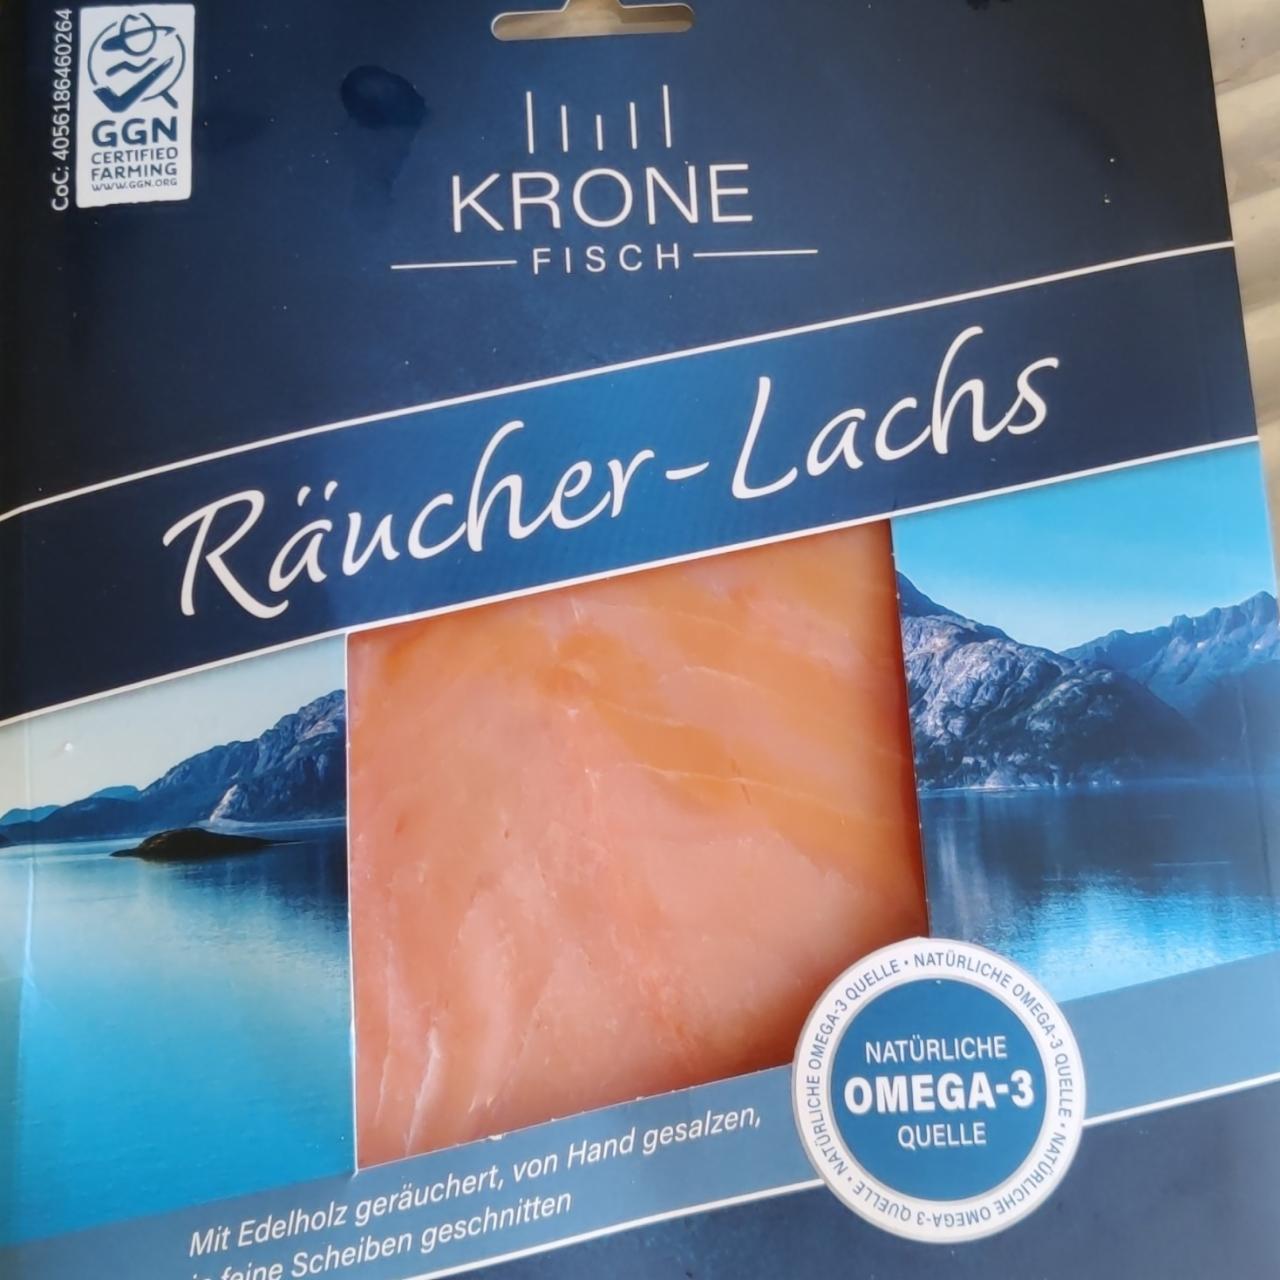 Fotografie - Räucher-Lachs Krone Fisch